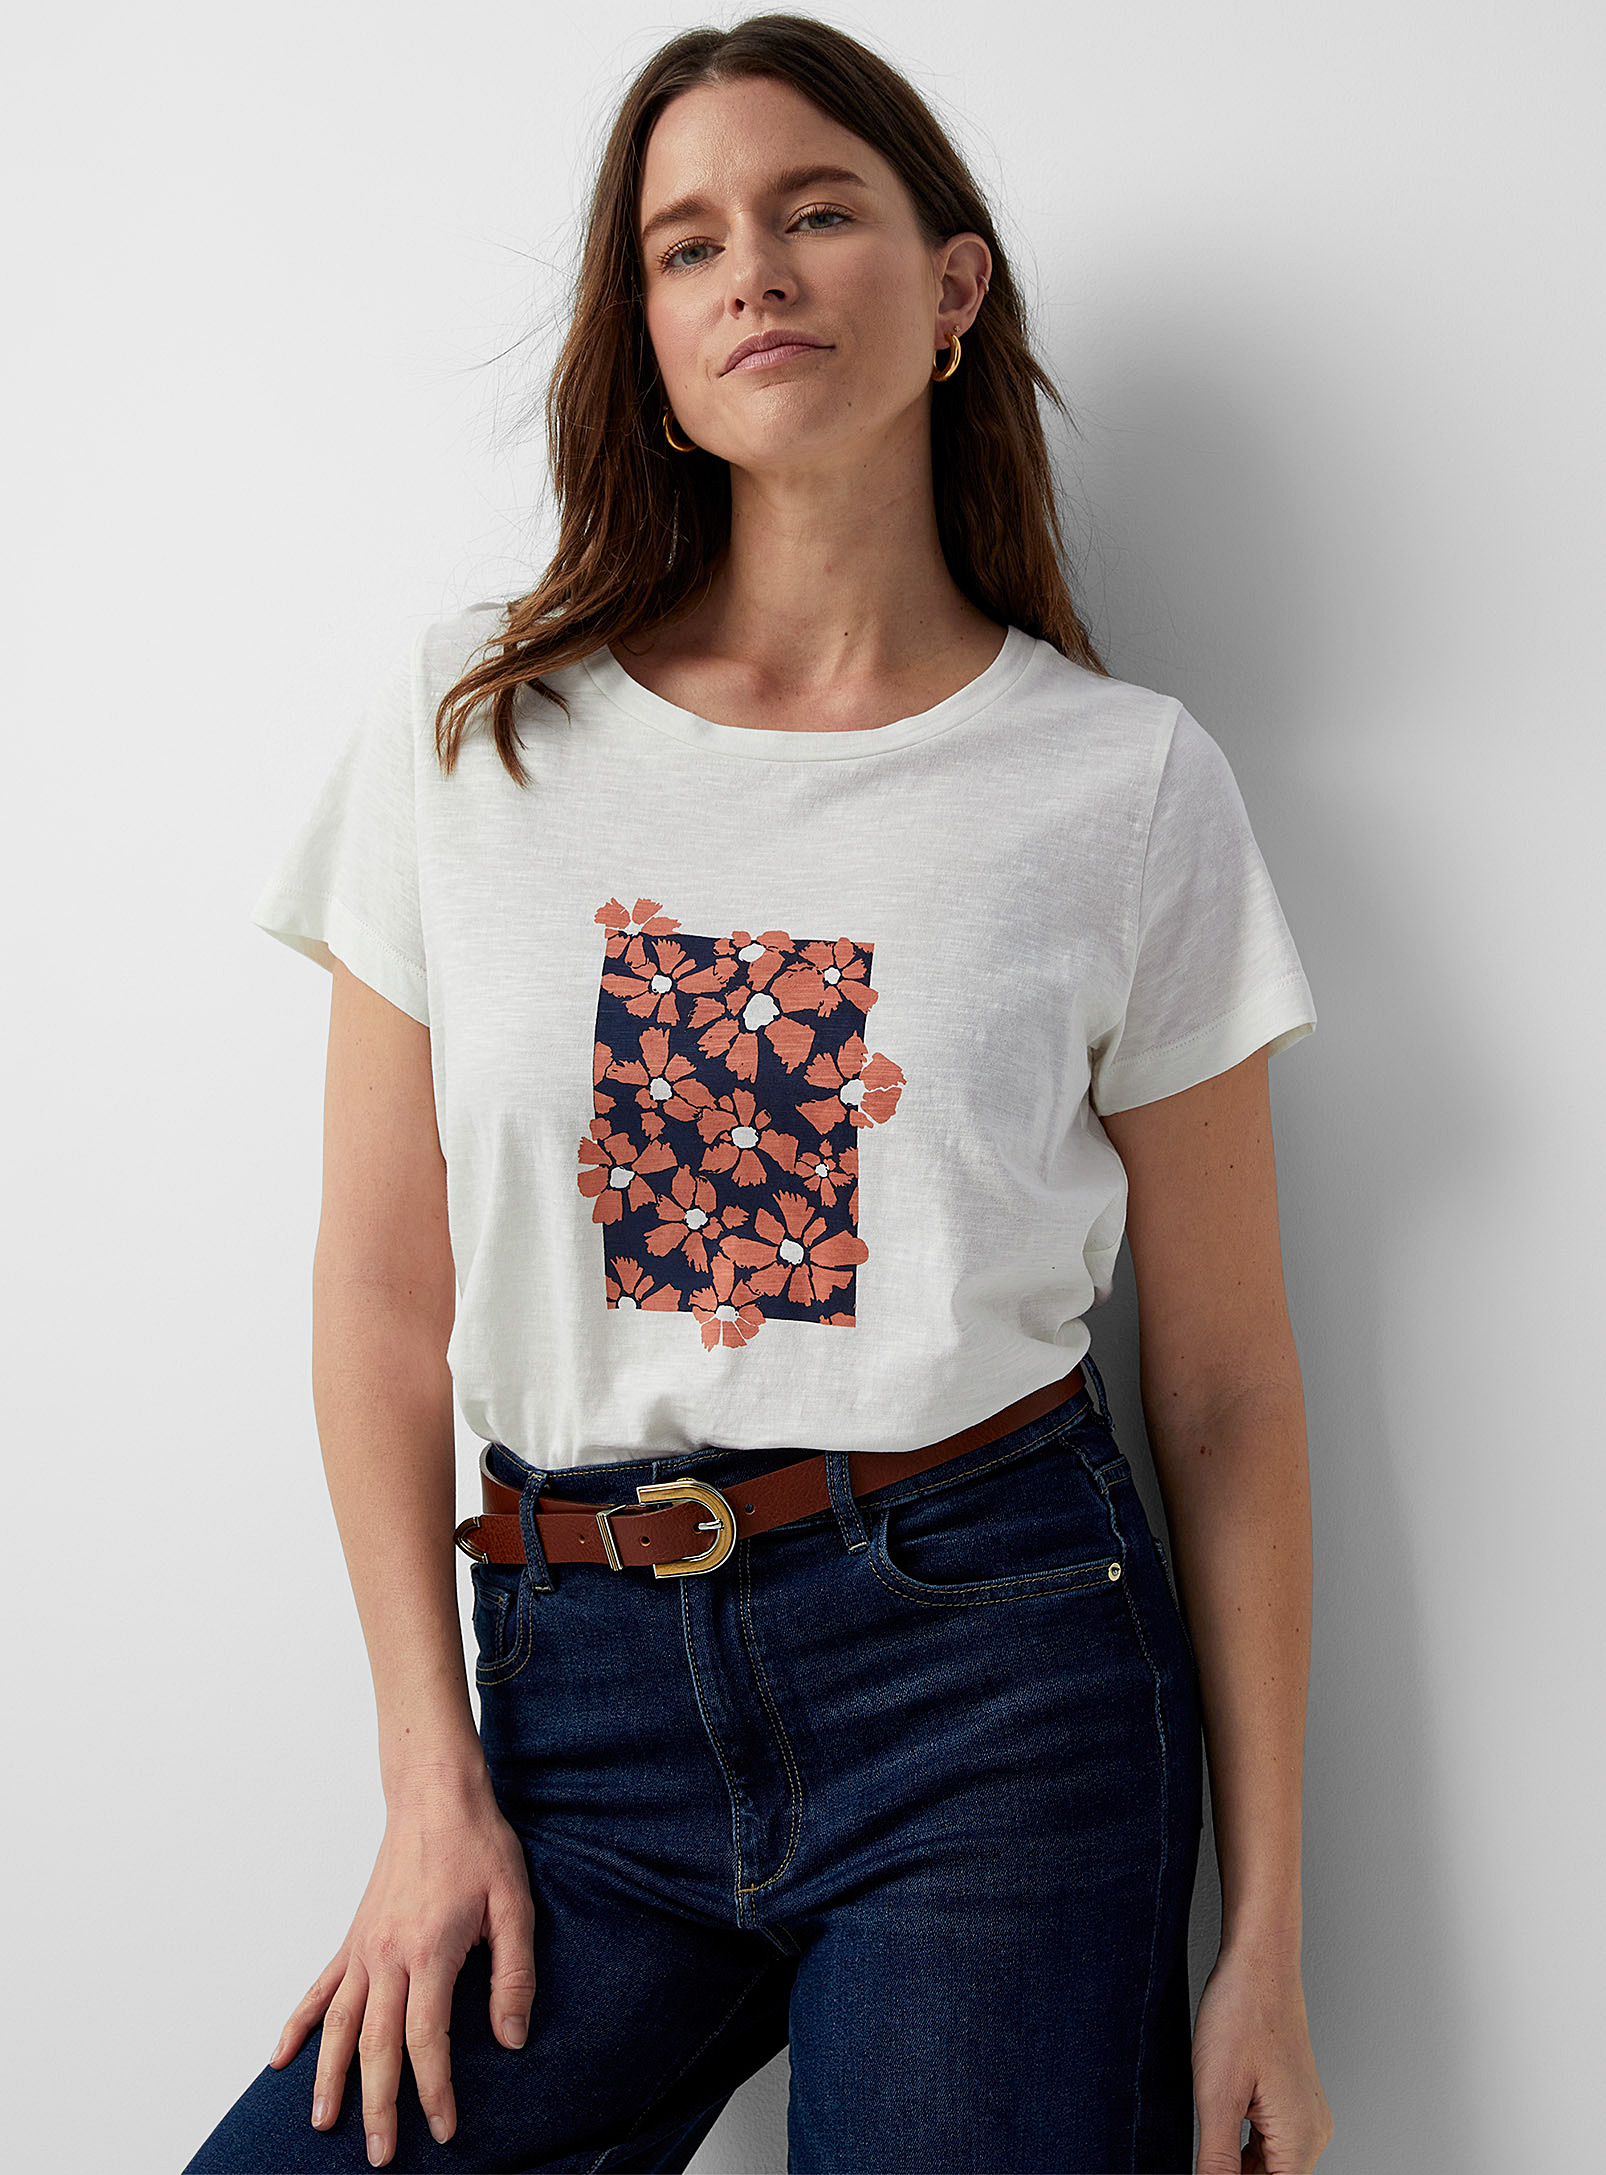 Contemporaine - Women's Artistic print T-shirt